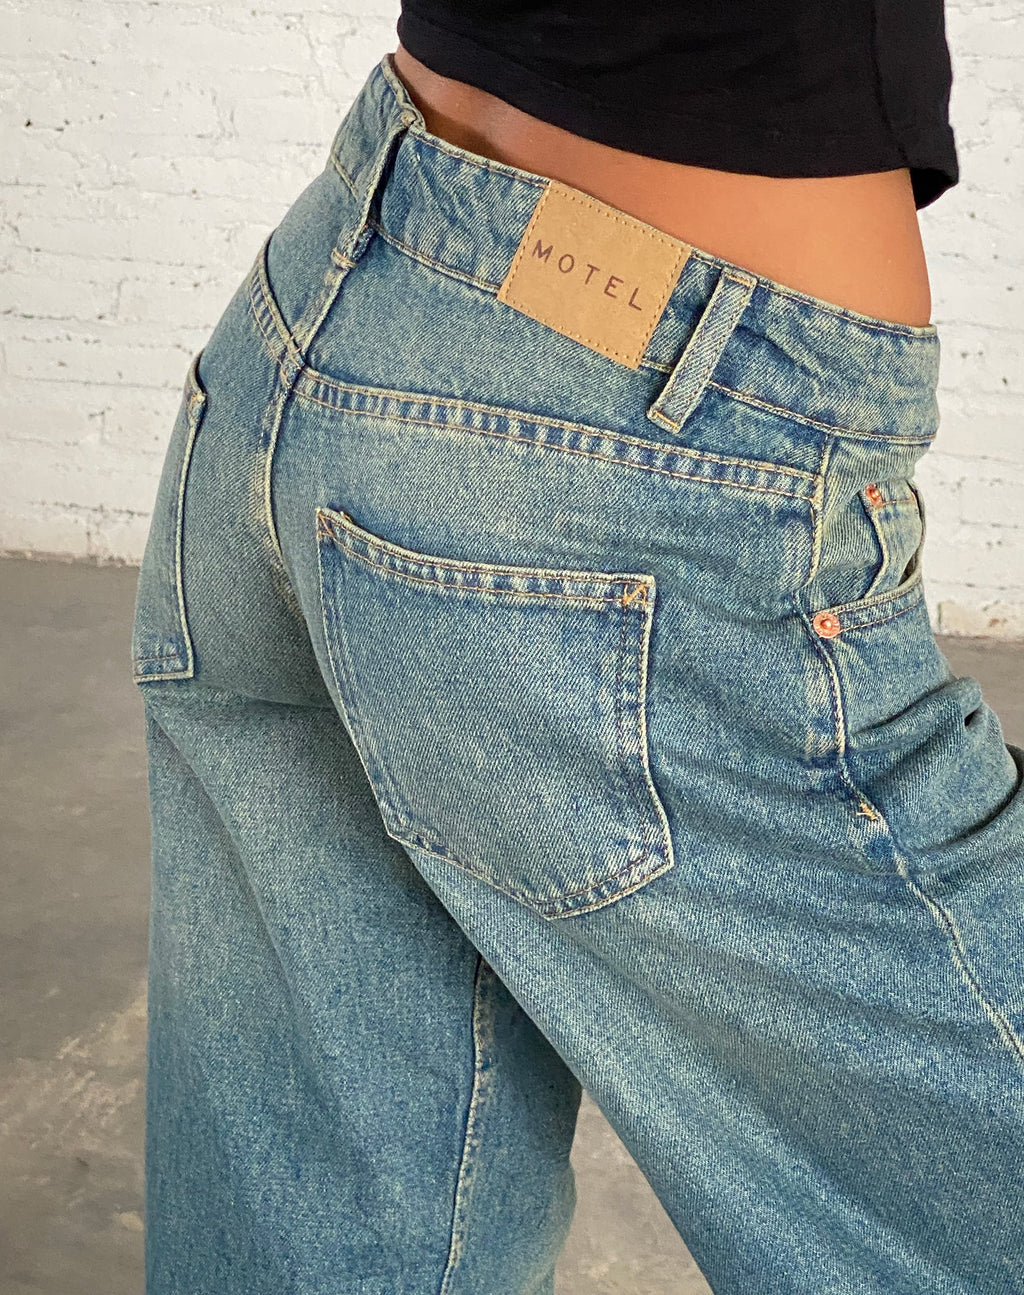 Low Rise Parallel Jeans in Vintage Blauwgroen